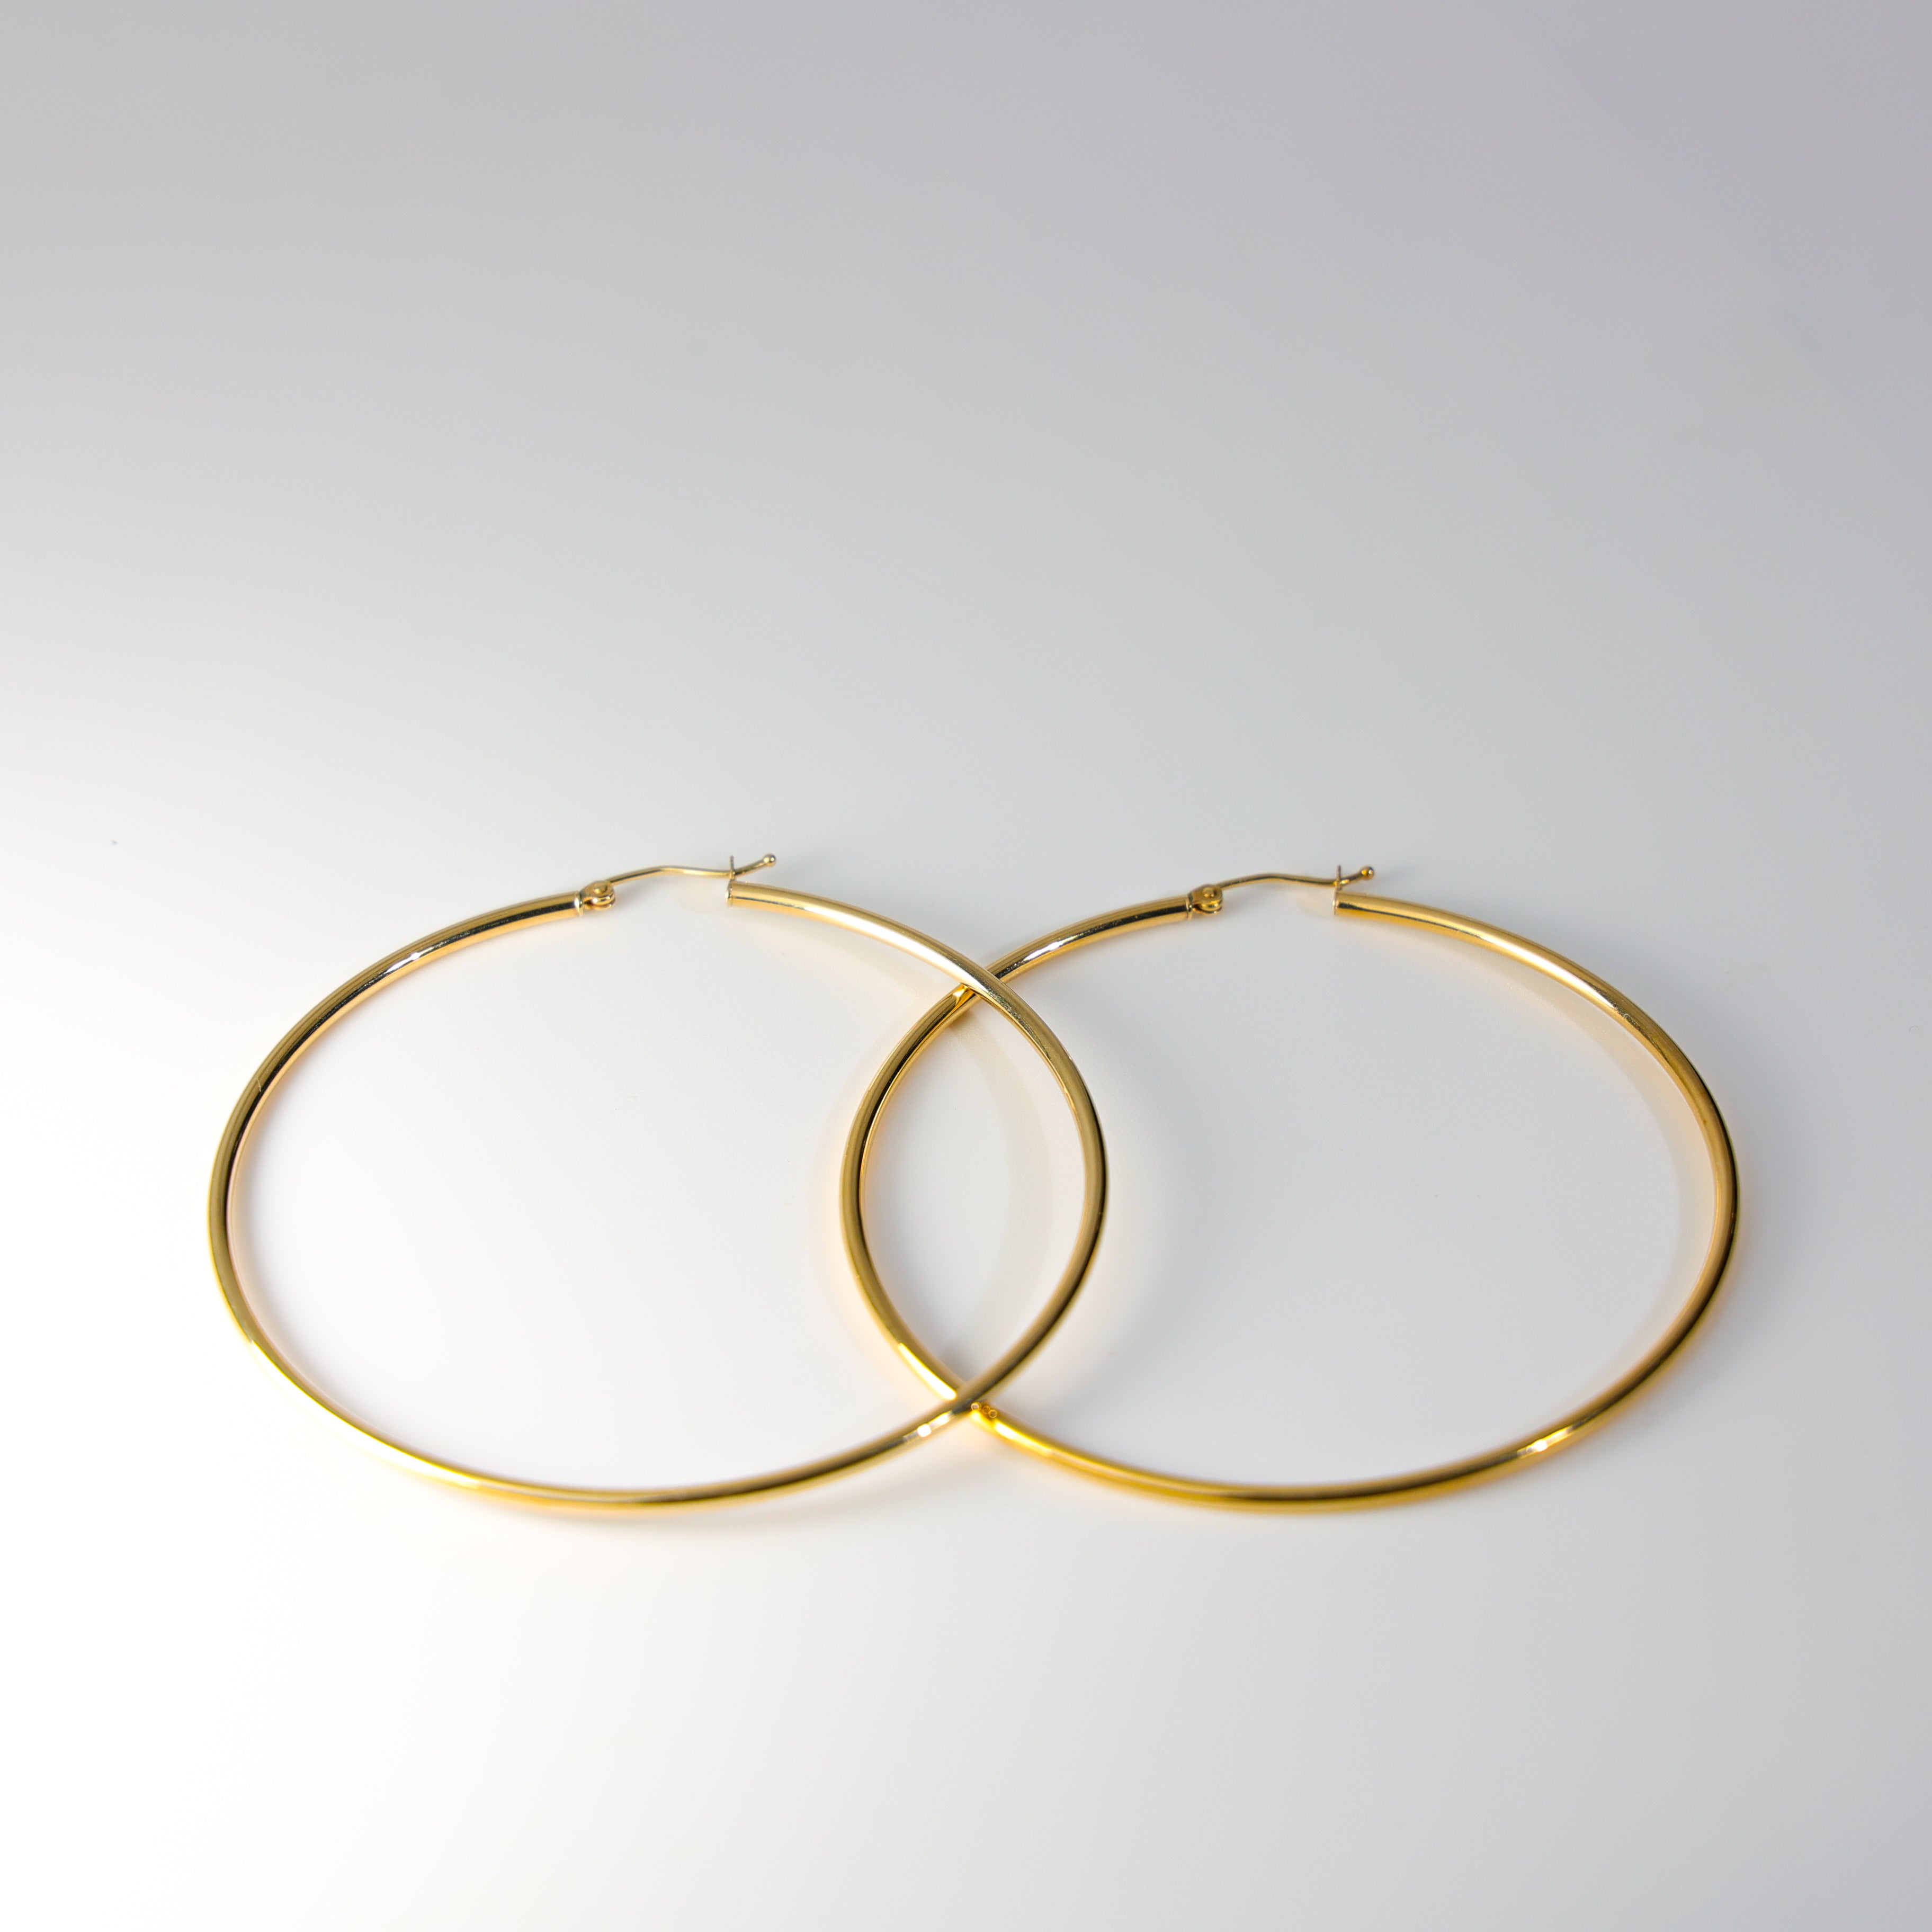 Gold Huggie Hoop Earrings 65 MM Wide Model-0134 - Charlie & Co. Jewelry